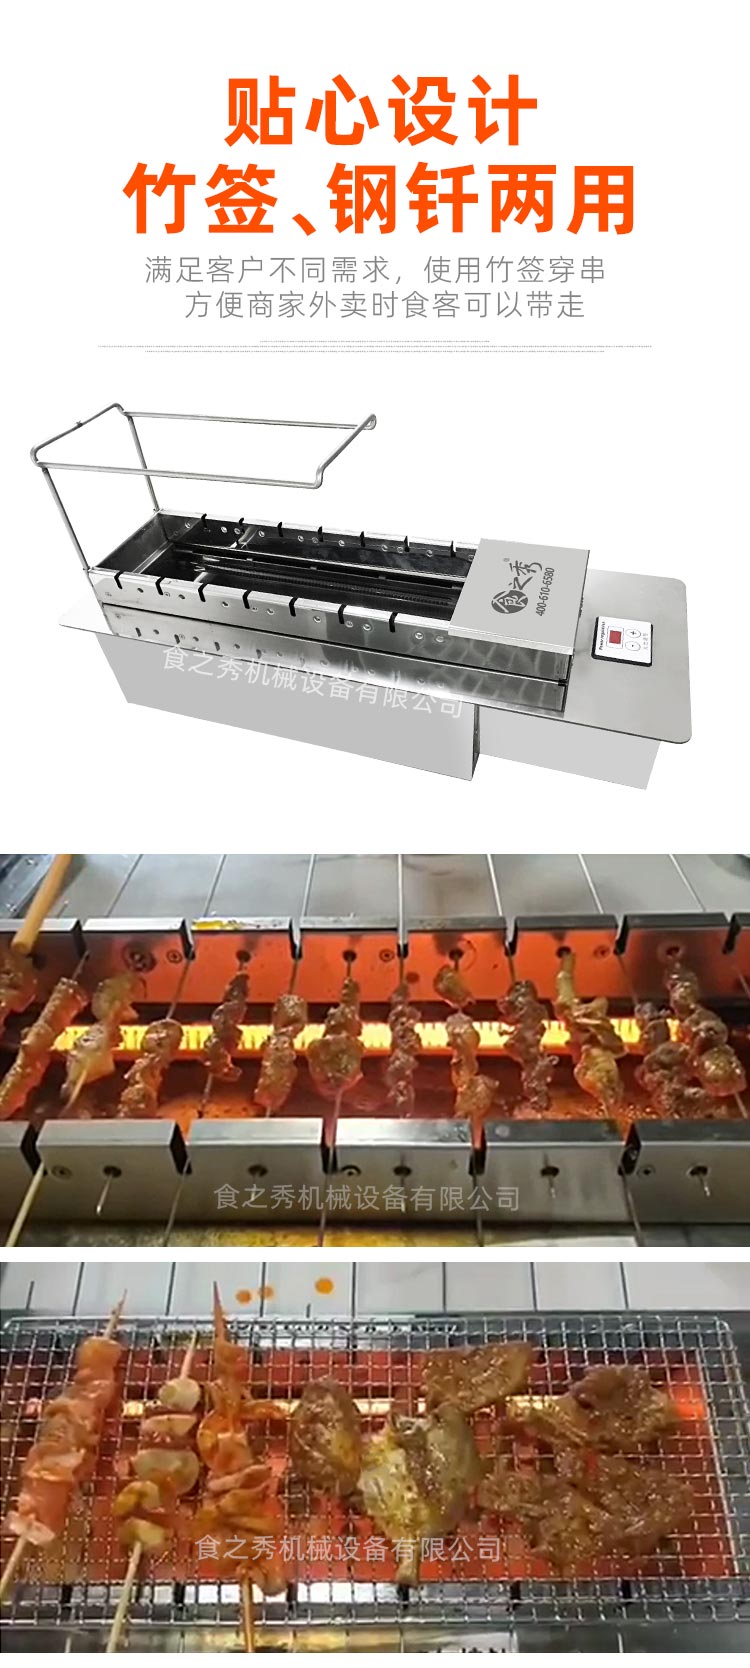 能用竹签的全自动电烤串炉子多少钱一台，哪里能买到竹签钢钎两用的电烤炉